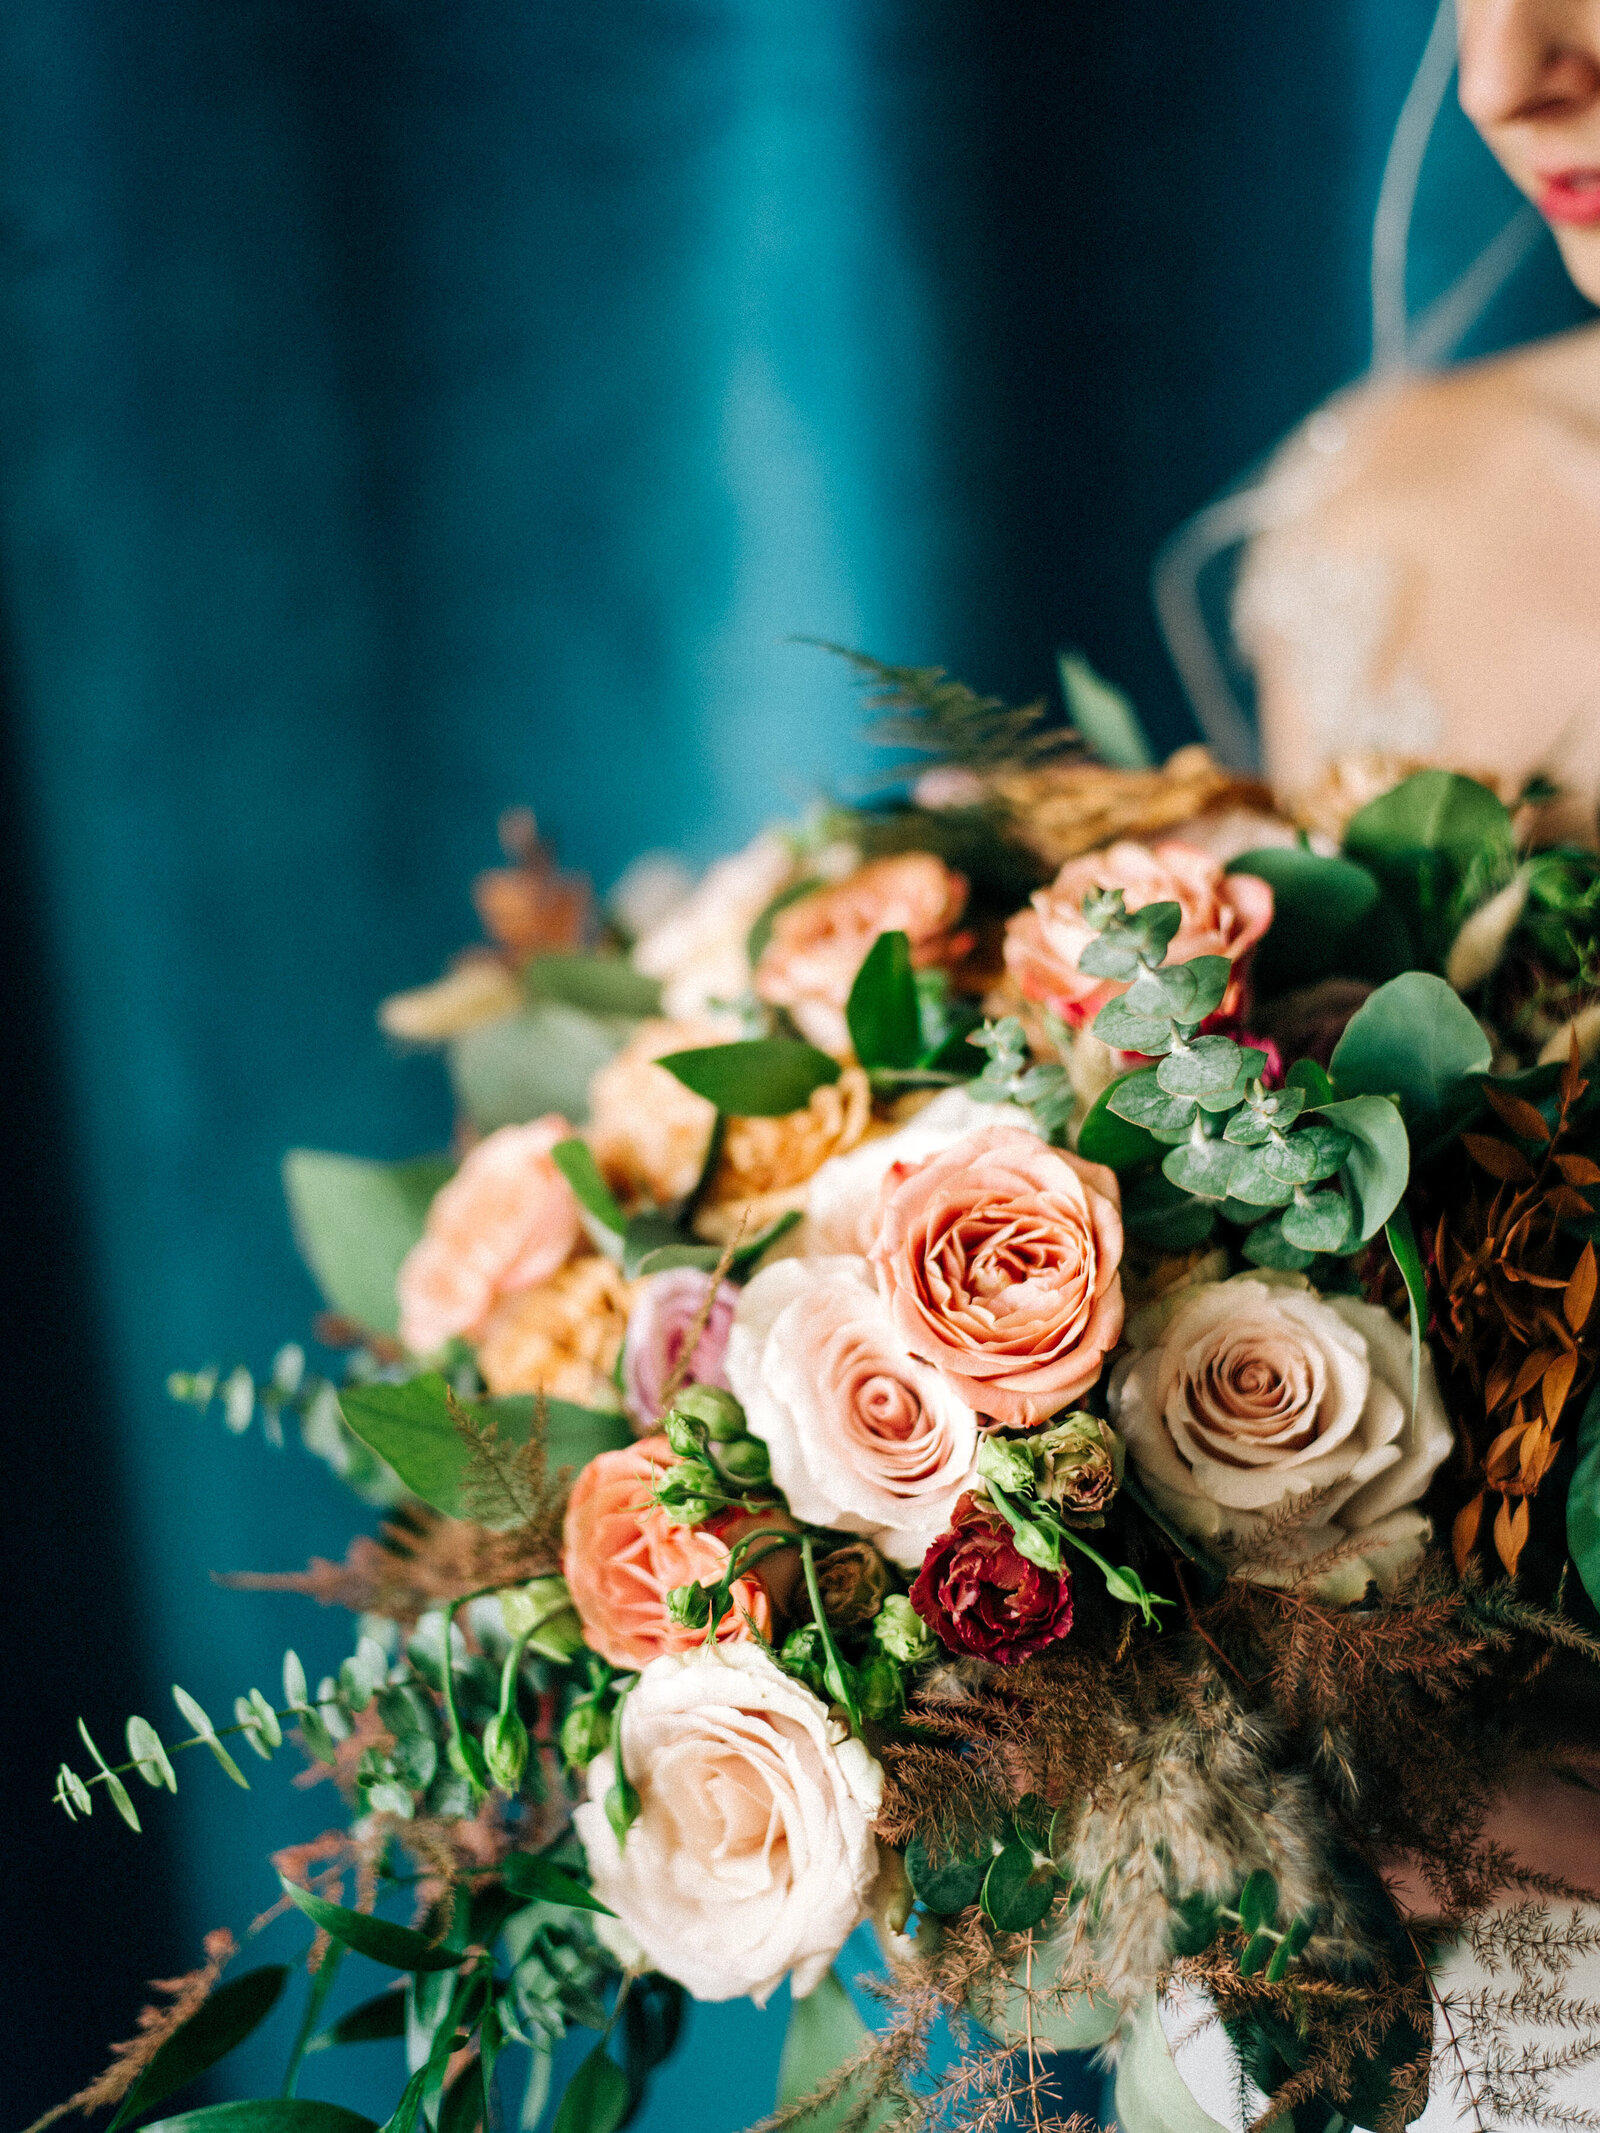 076-sean-cook-wedding-detroit-colorful-winter-bouquet